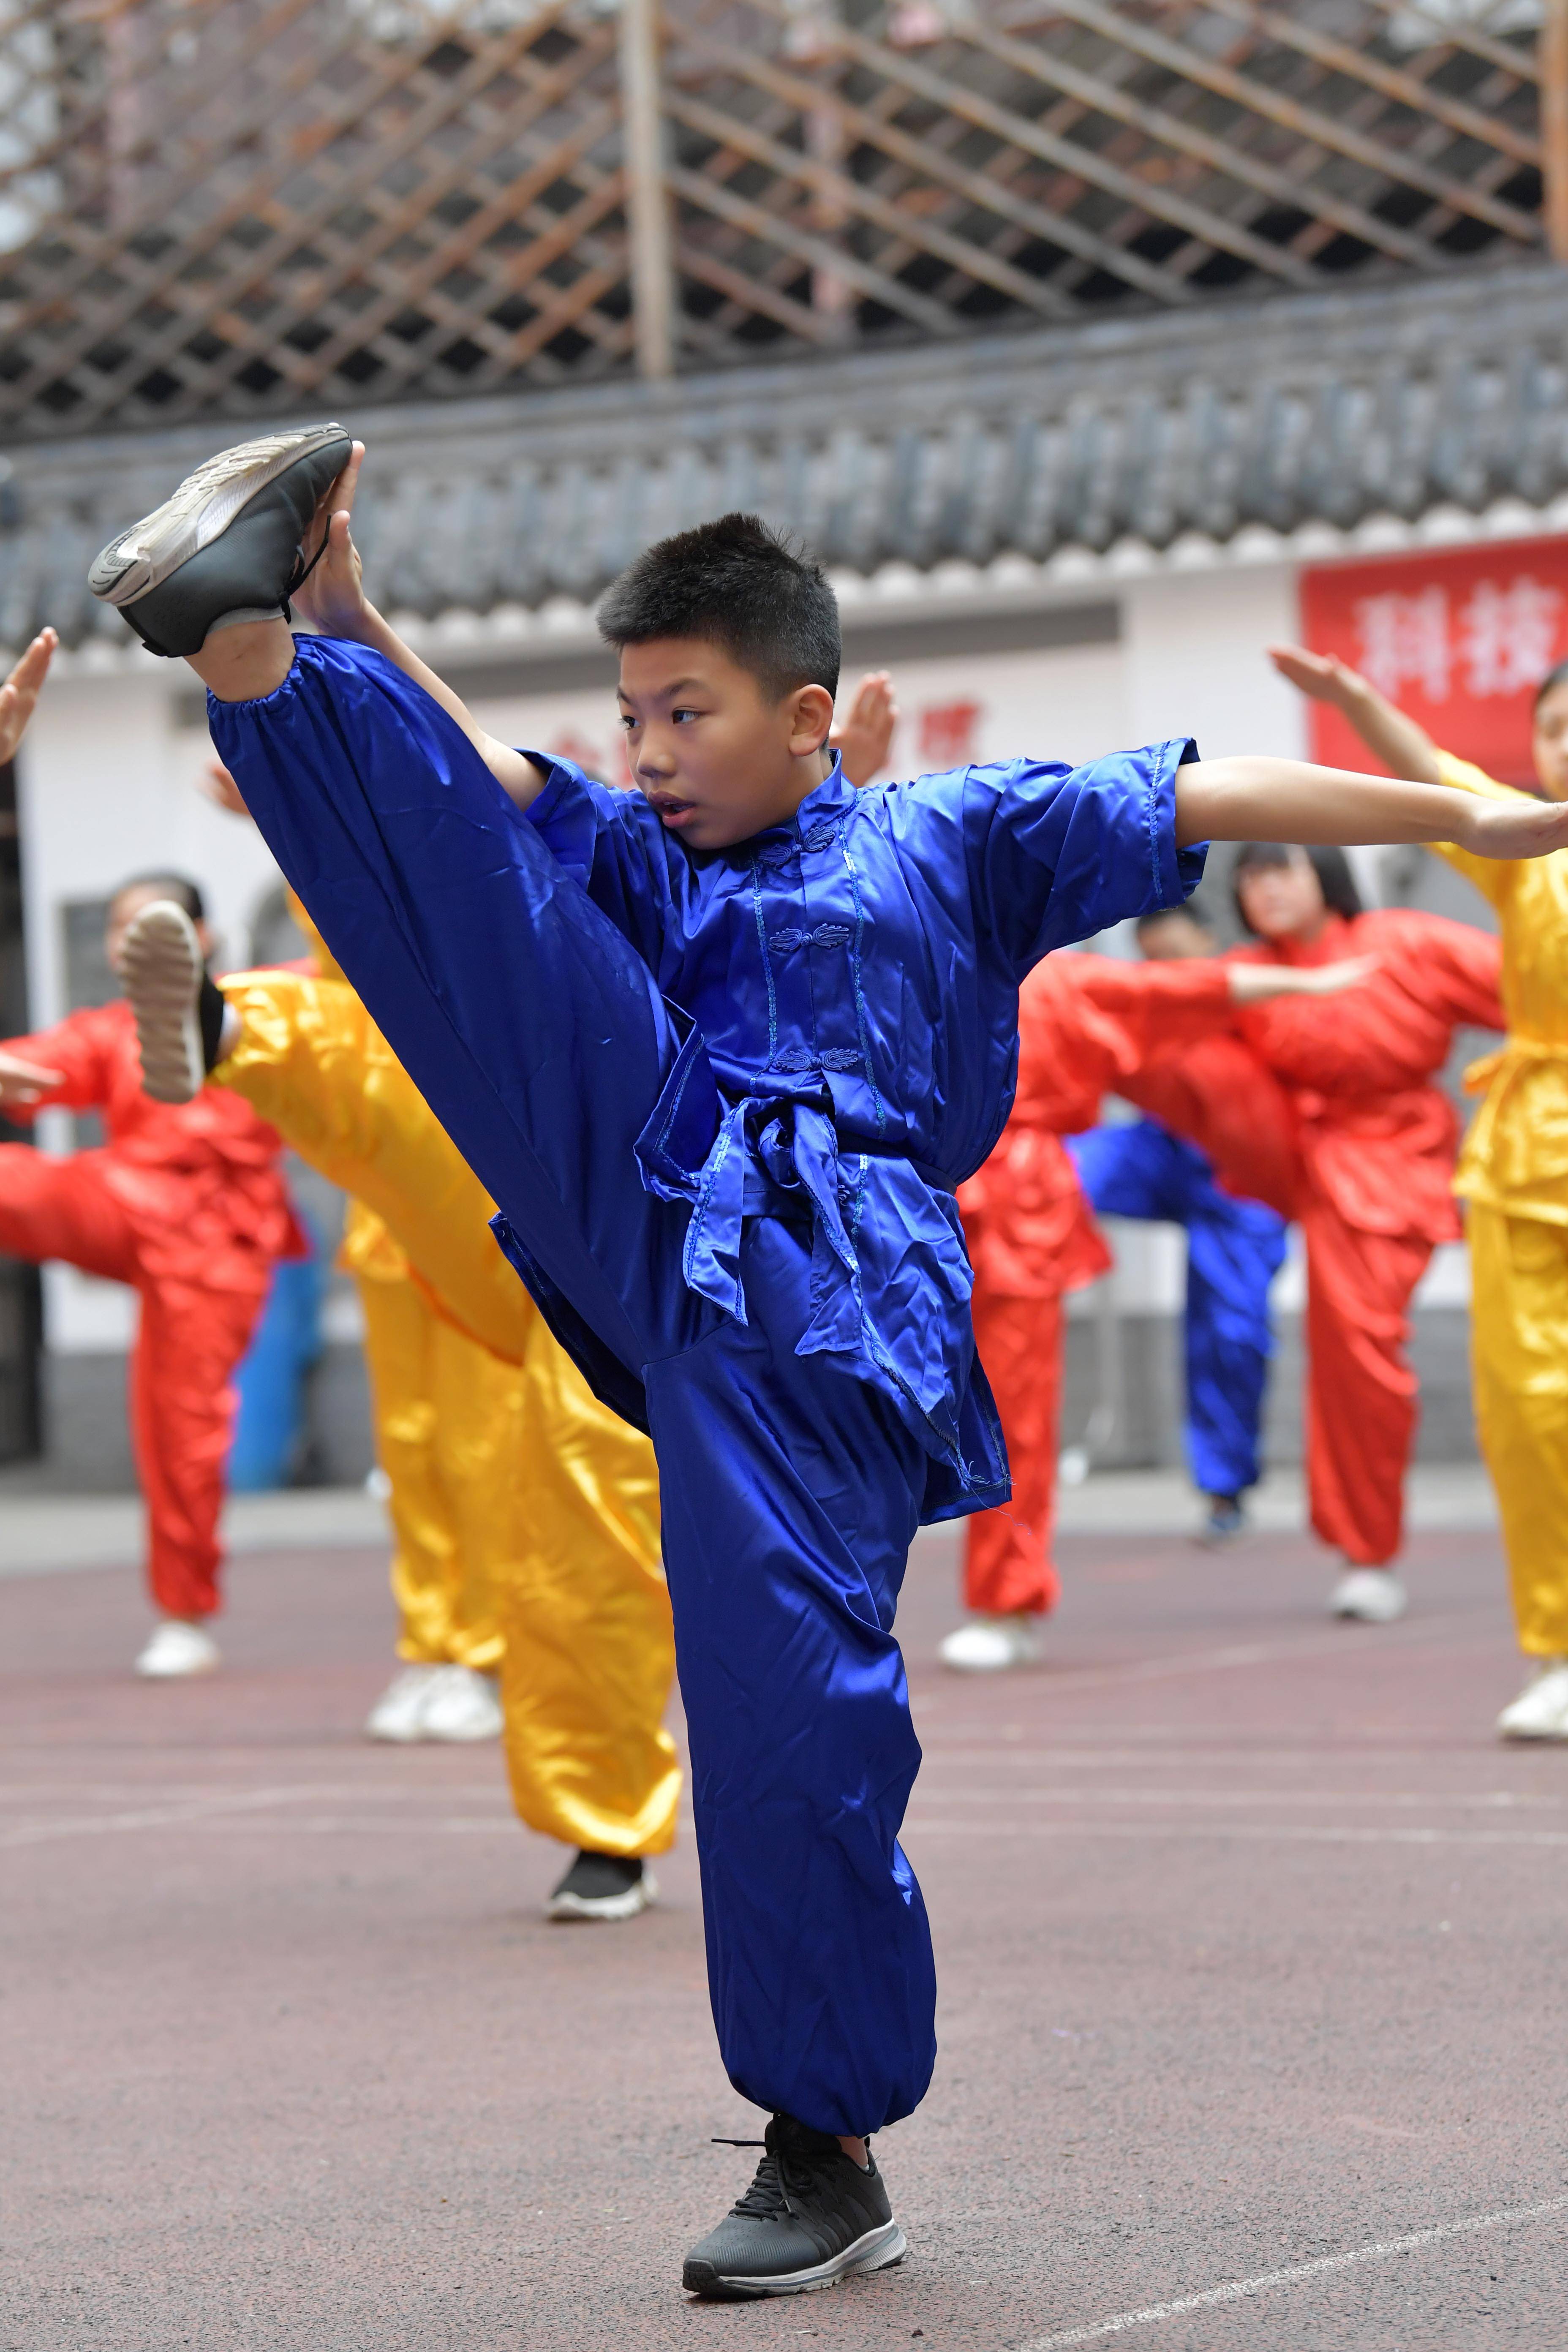 10月30日,学生戴文昊(前)练习武术动作